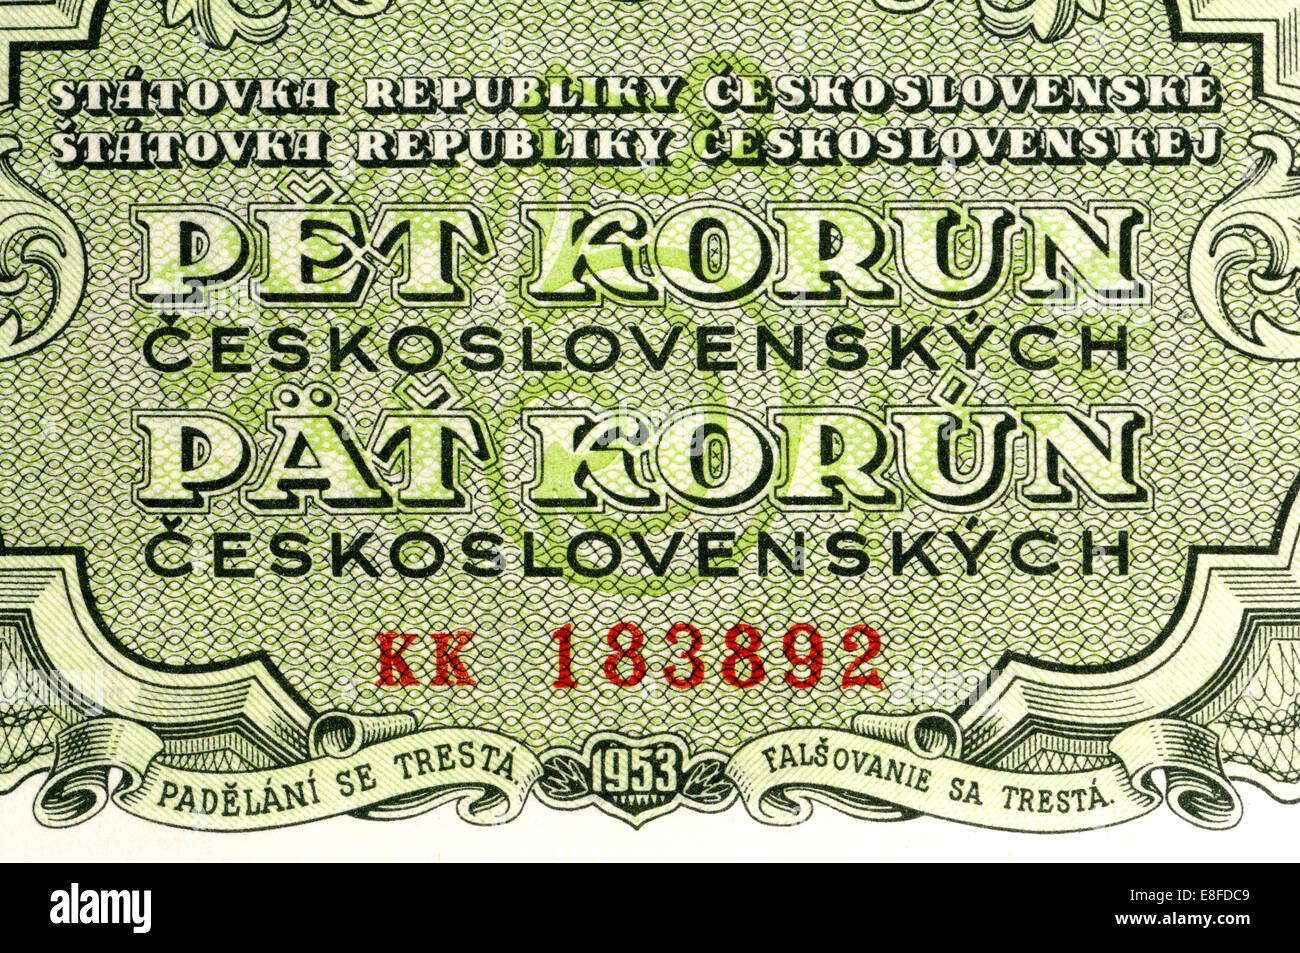 Detalle desde 1053 billete checoslovaco mostrando los idiomas checo y eslovaco - cinco coronas Foto de stock